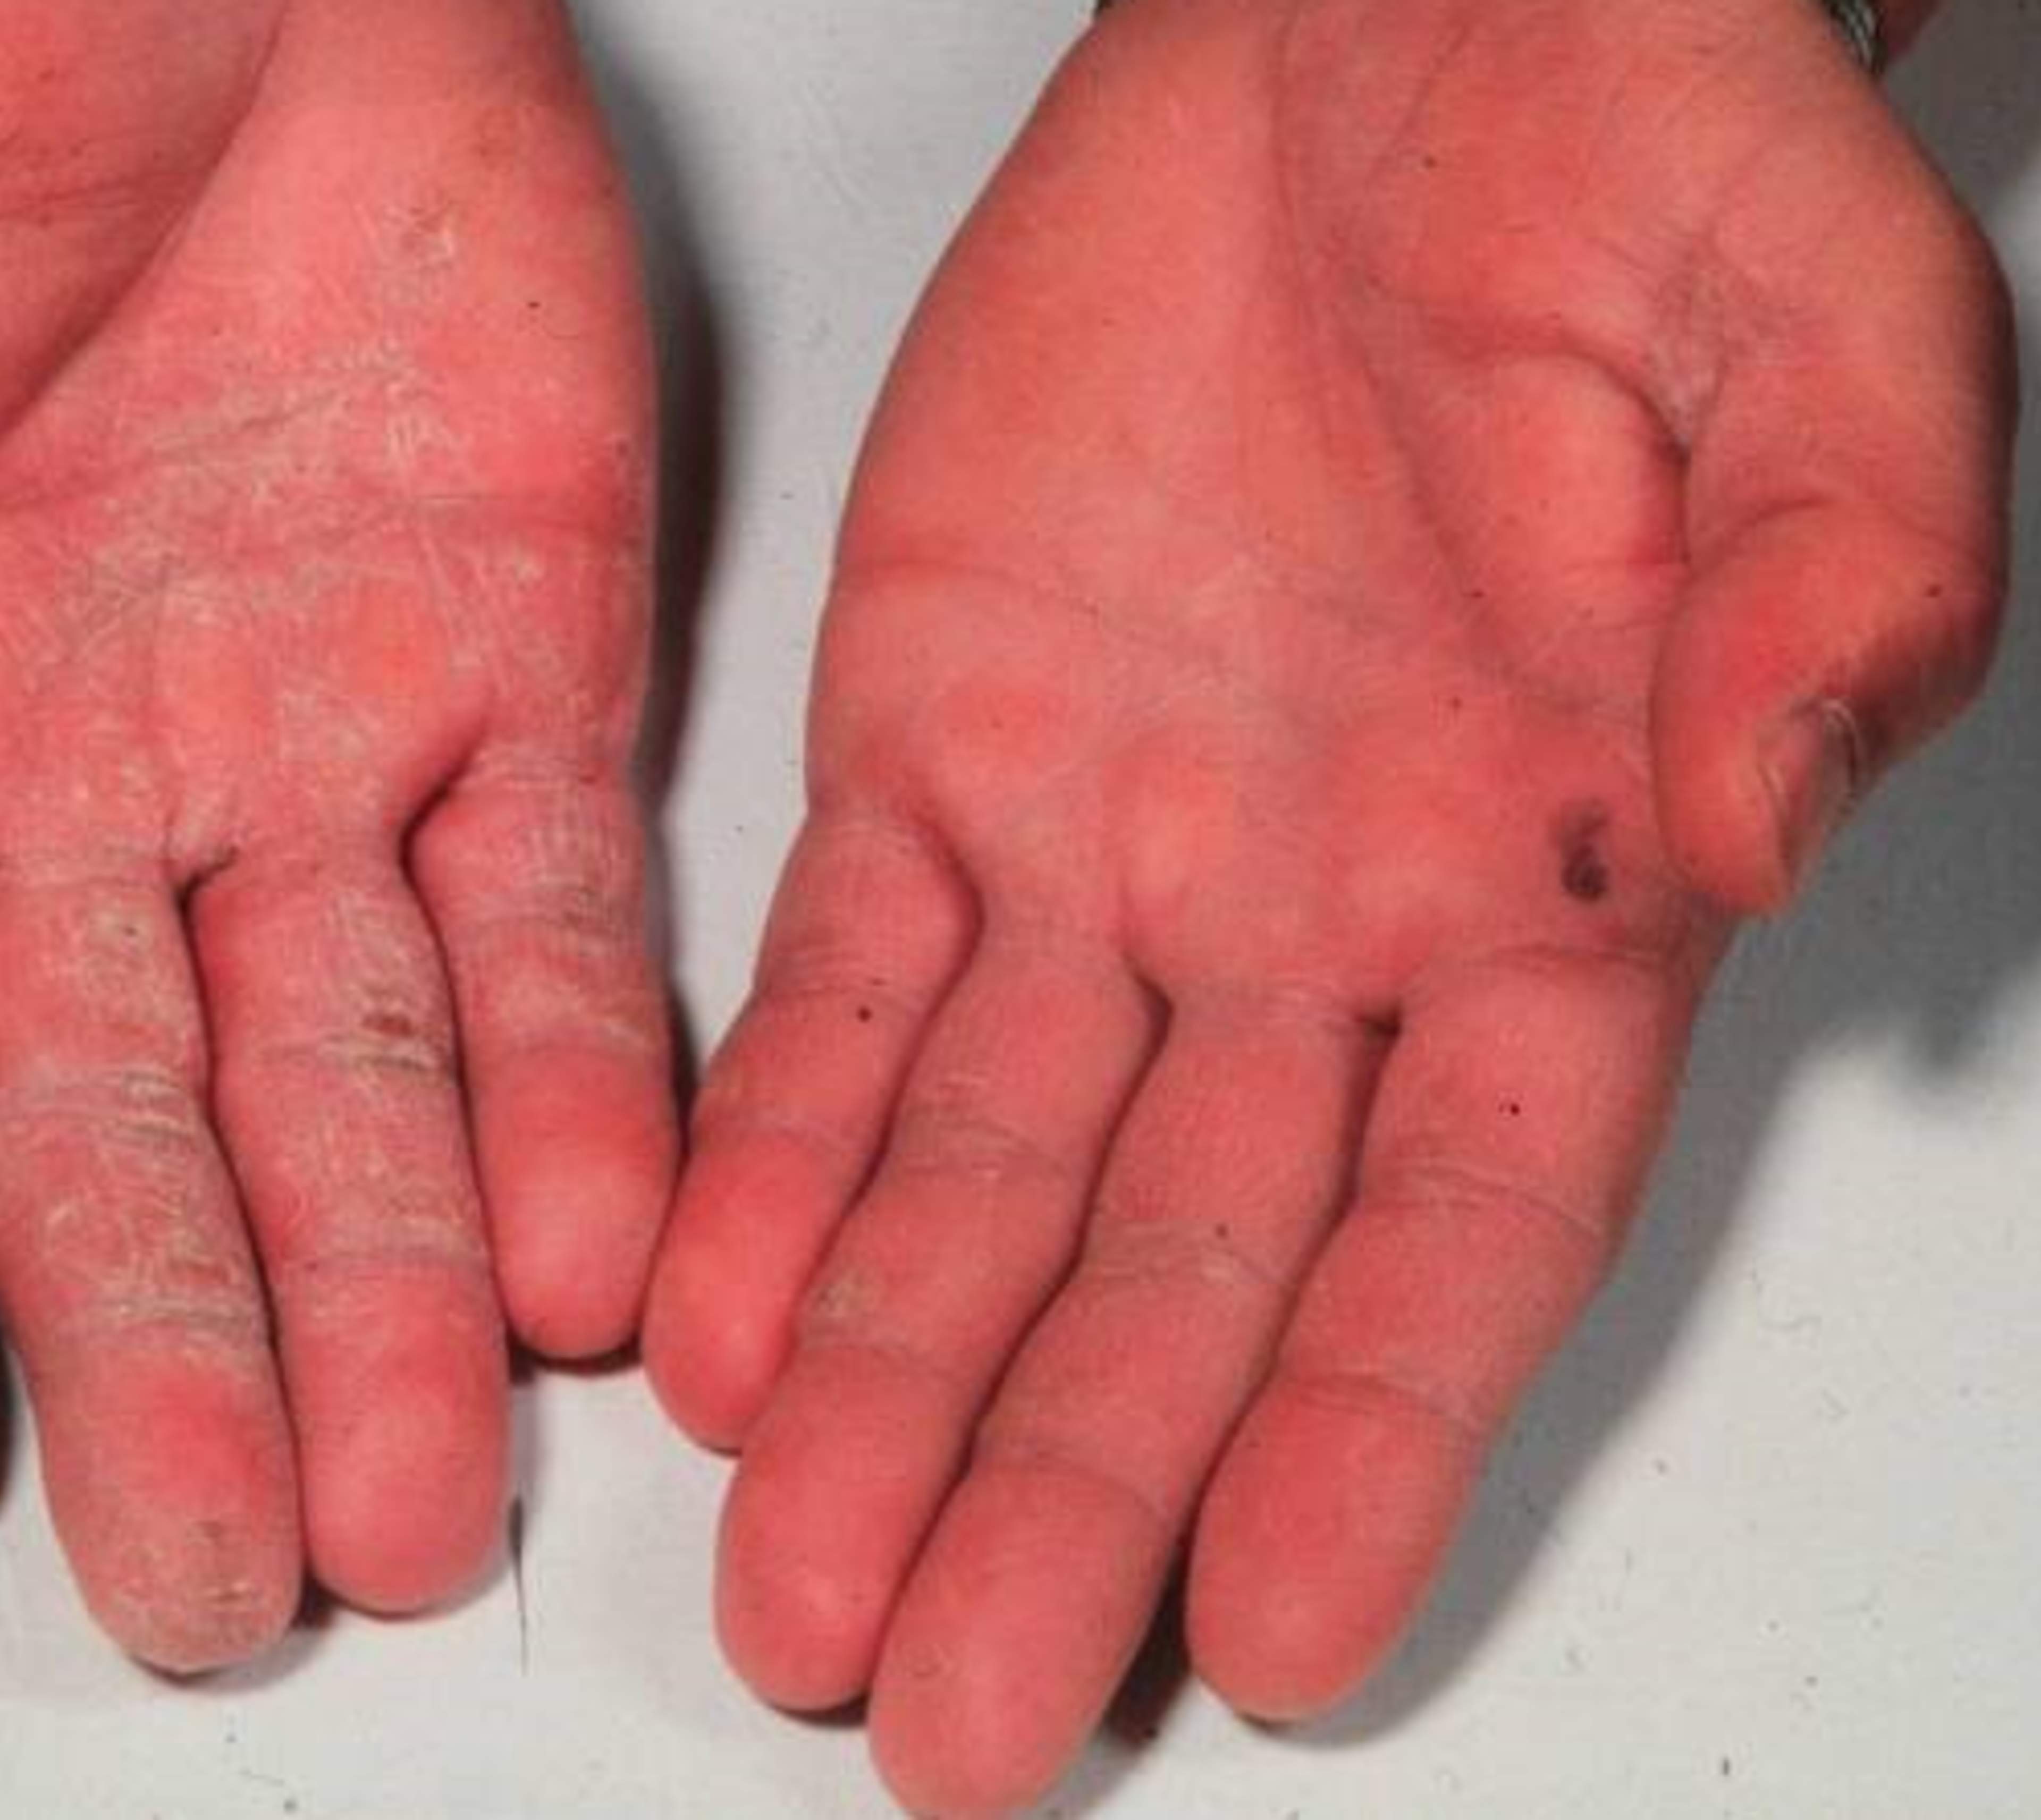 Bilden visar två händer med swampinfektion